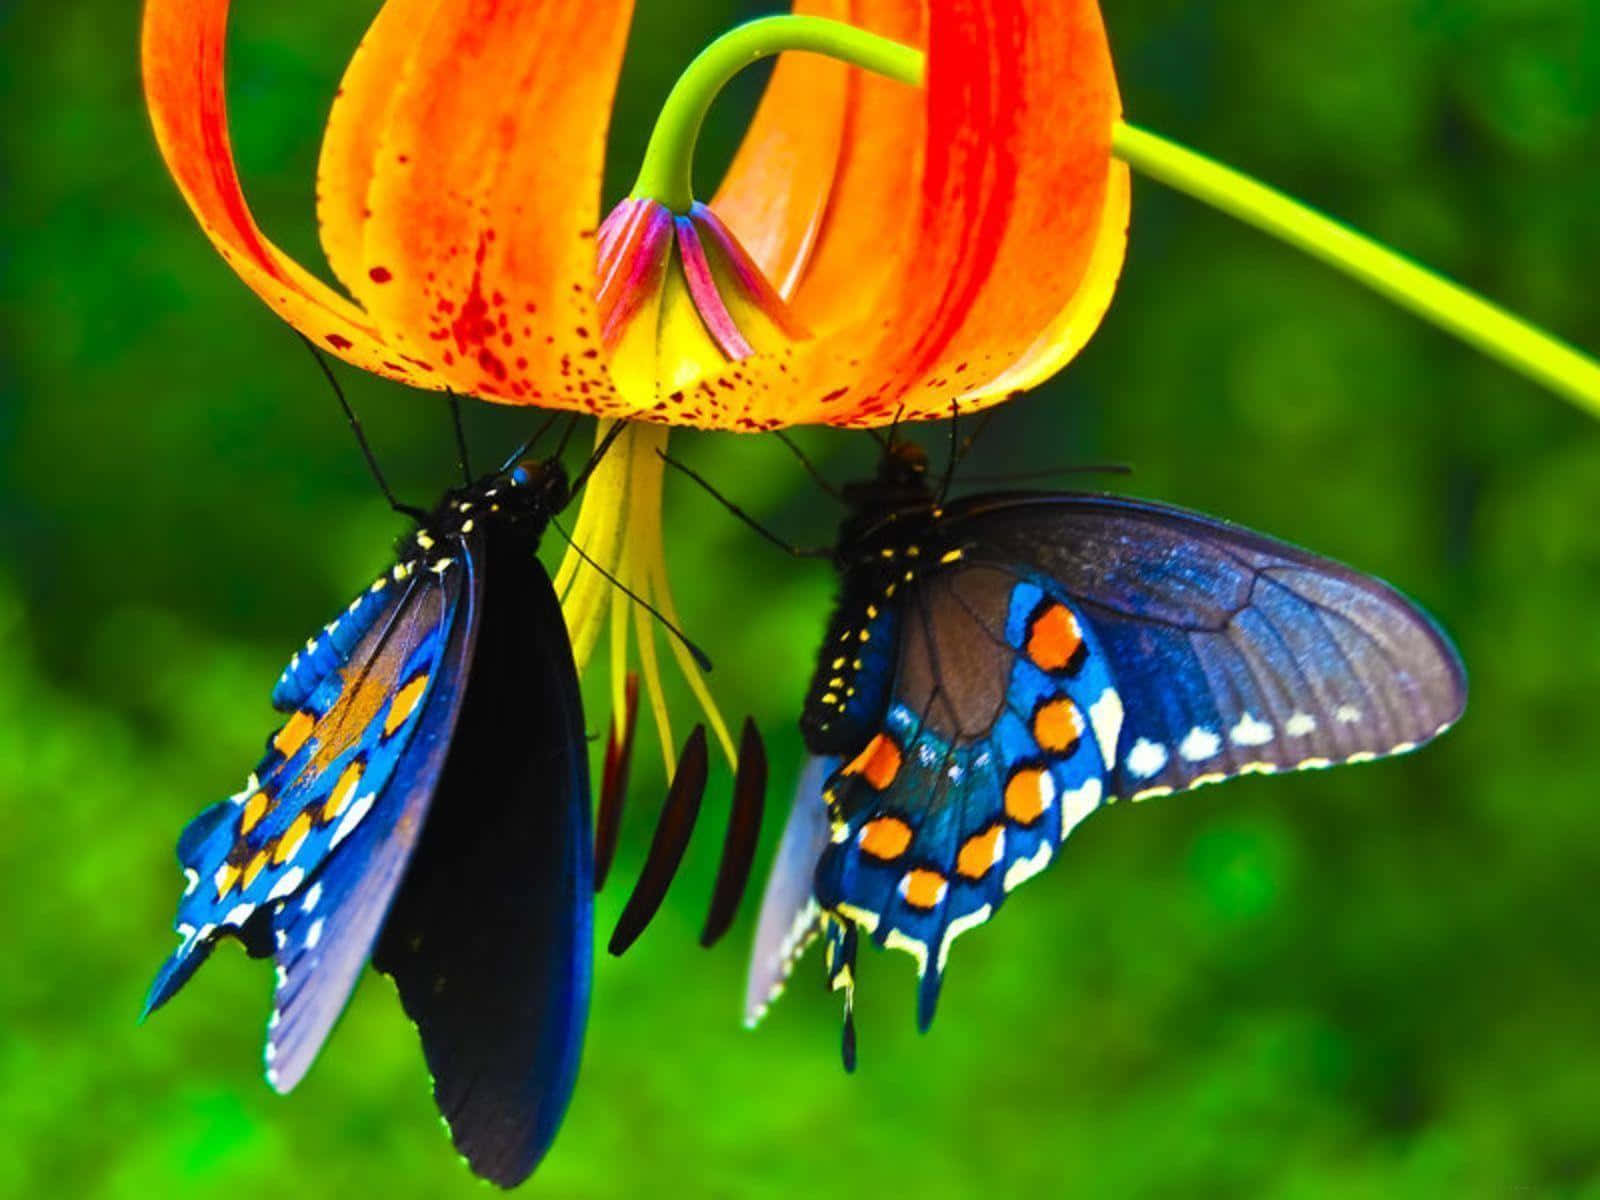 Duasborboletas Estão Sentadas Em Uma Flor. Papel de Parede